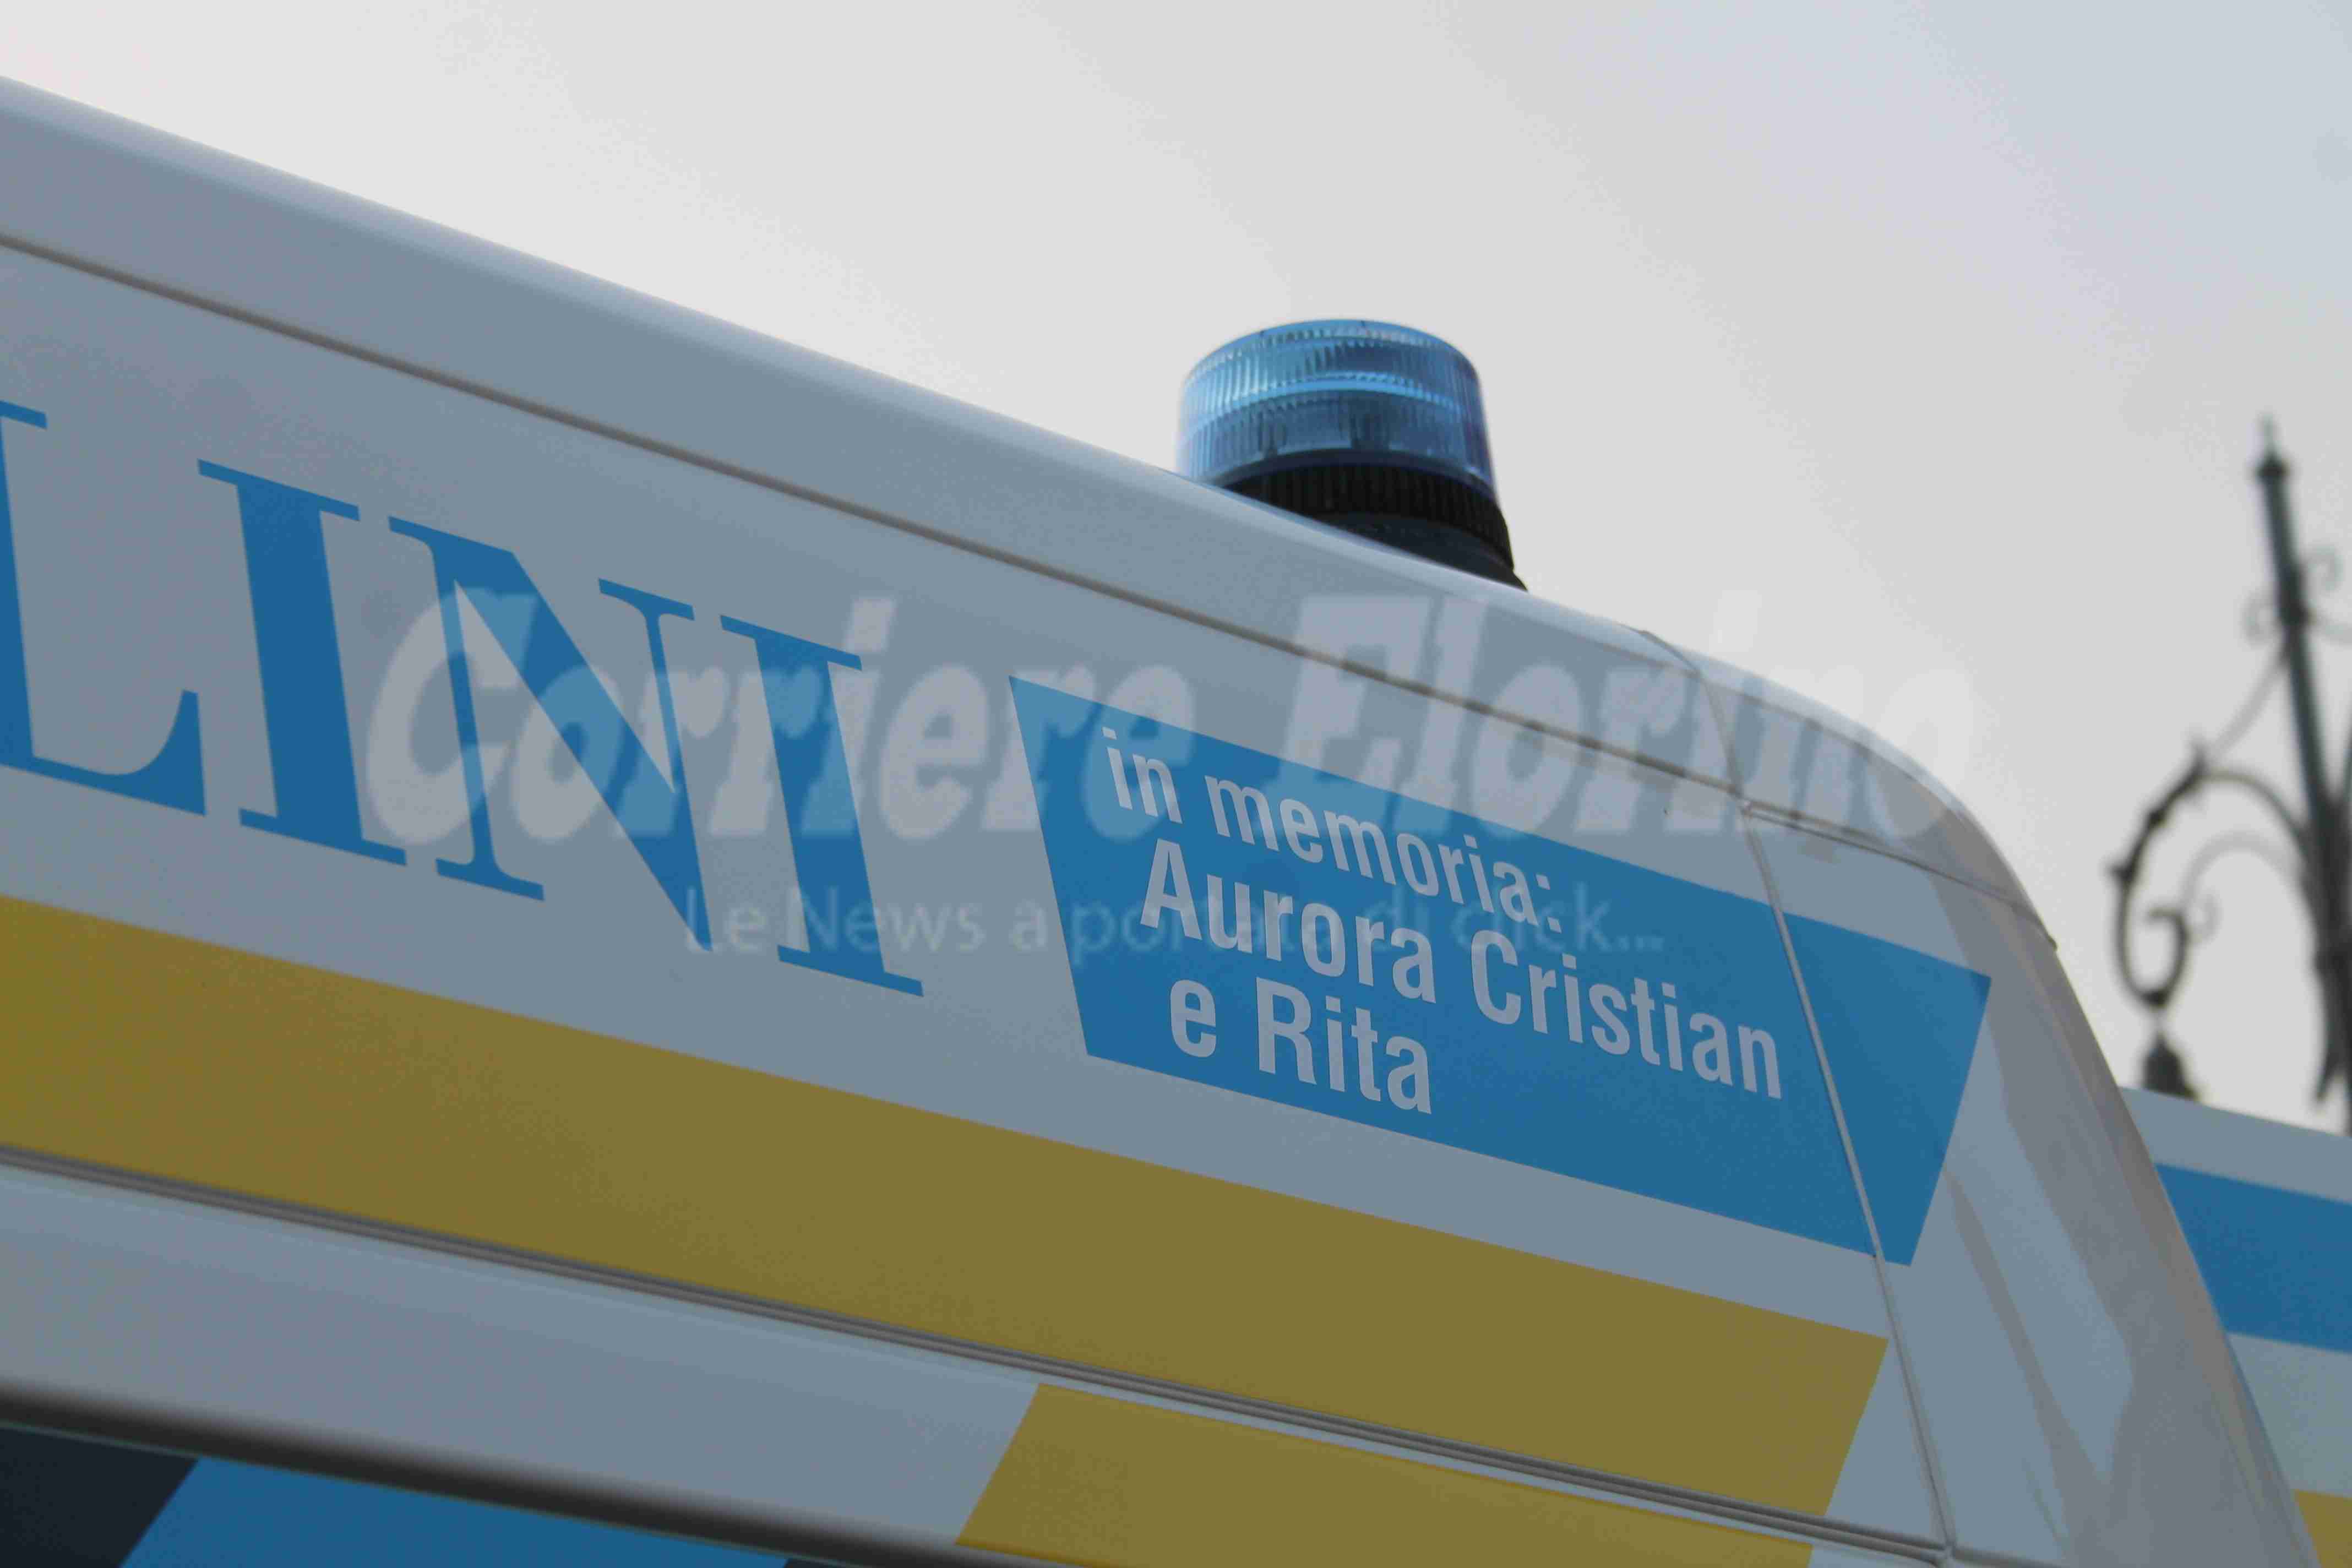 Inaugurata la nuova ambulanza della Misericordia intitolata a Cristian, Aurora e Rita